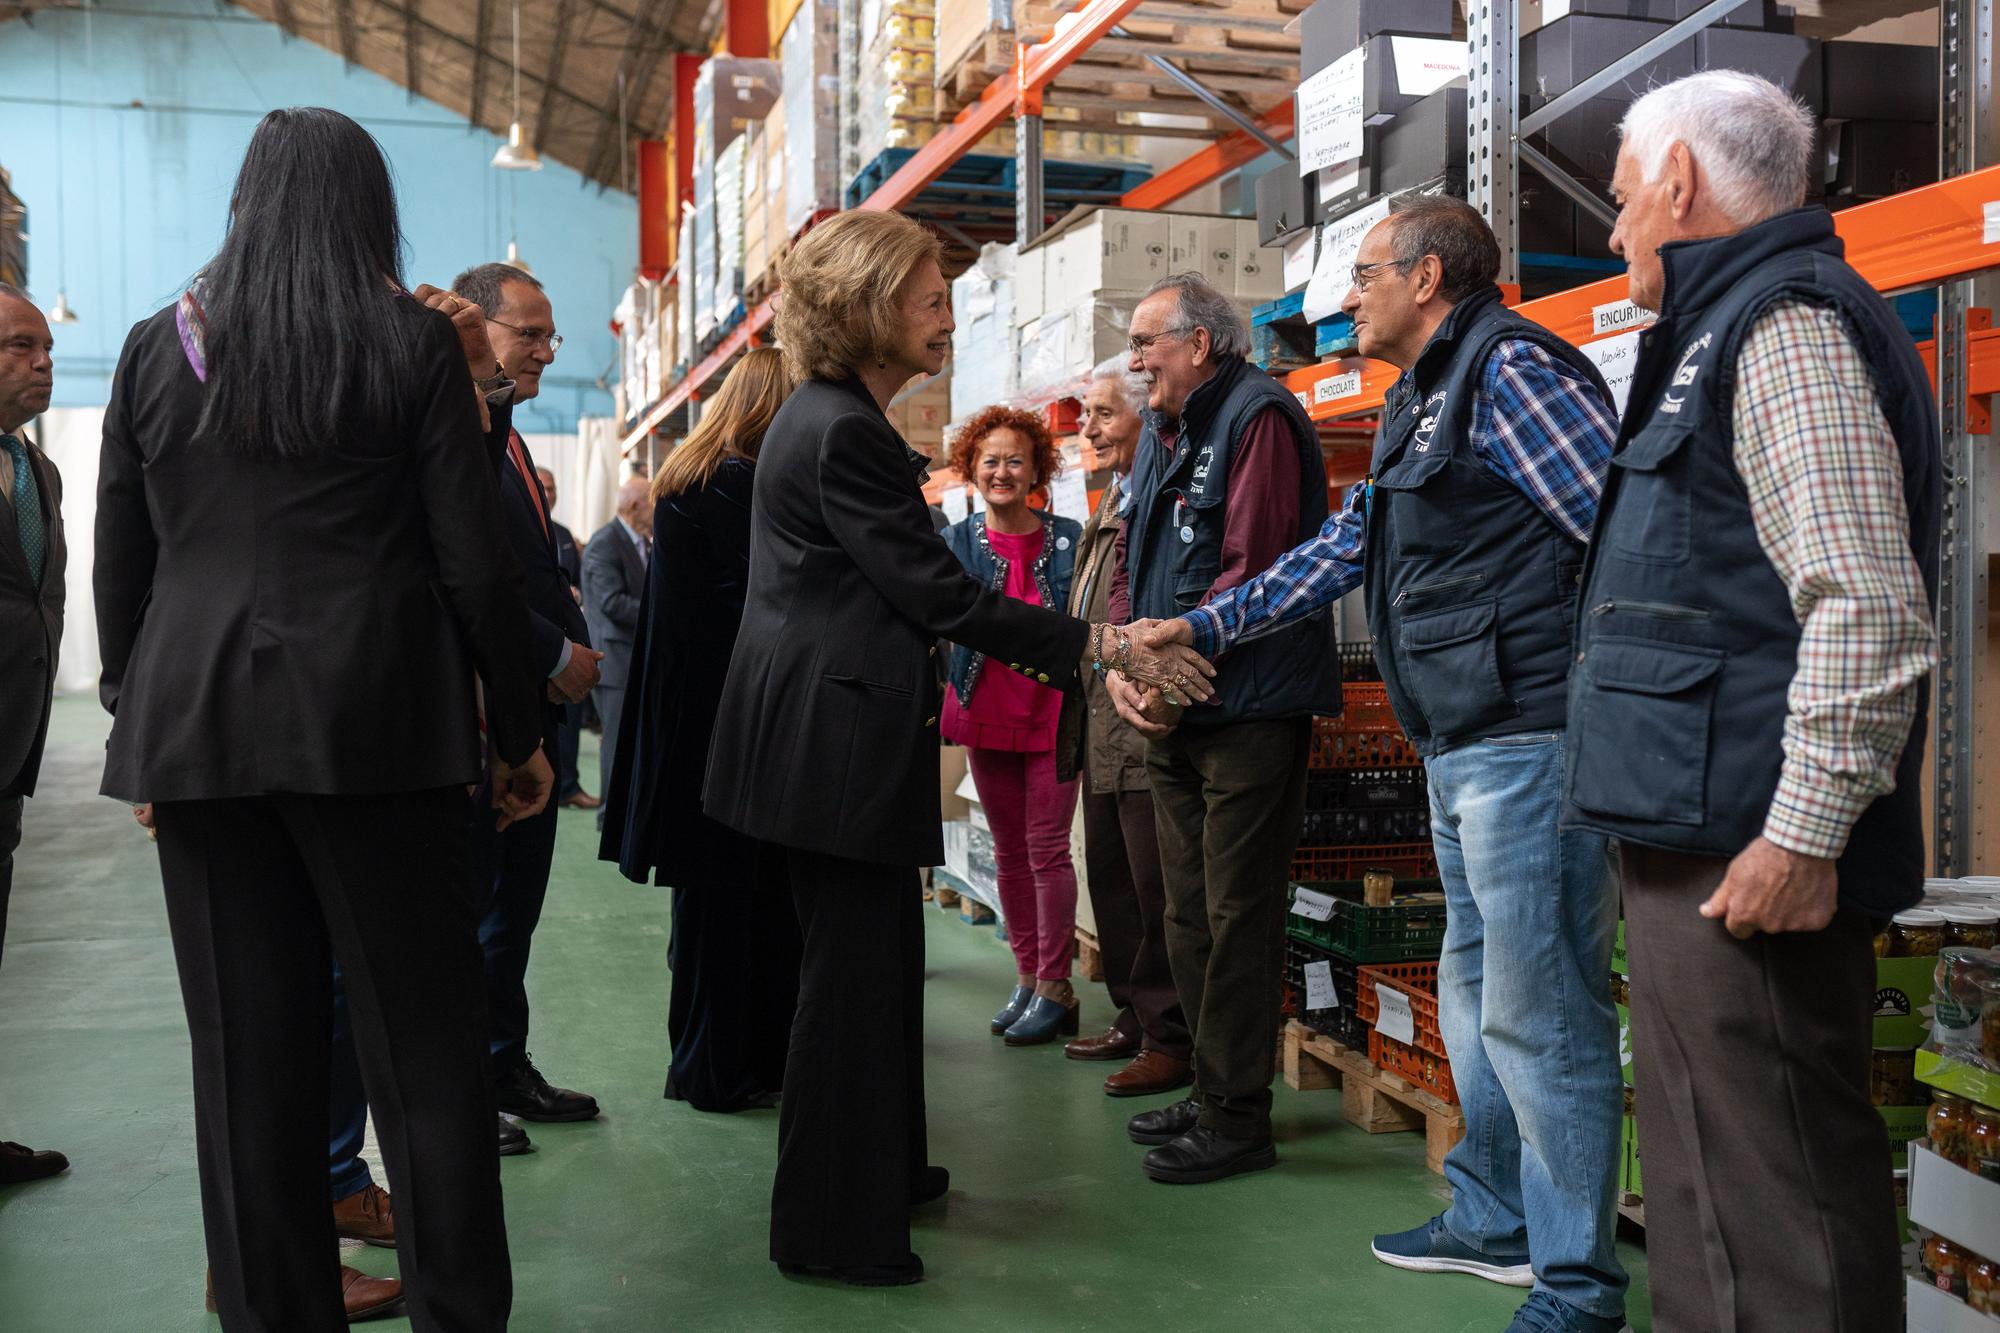 GALERÍA | La reina Sofía visita Zamora